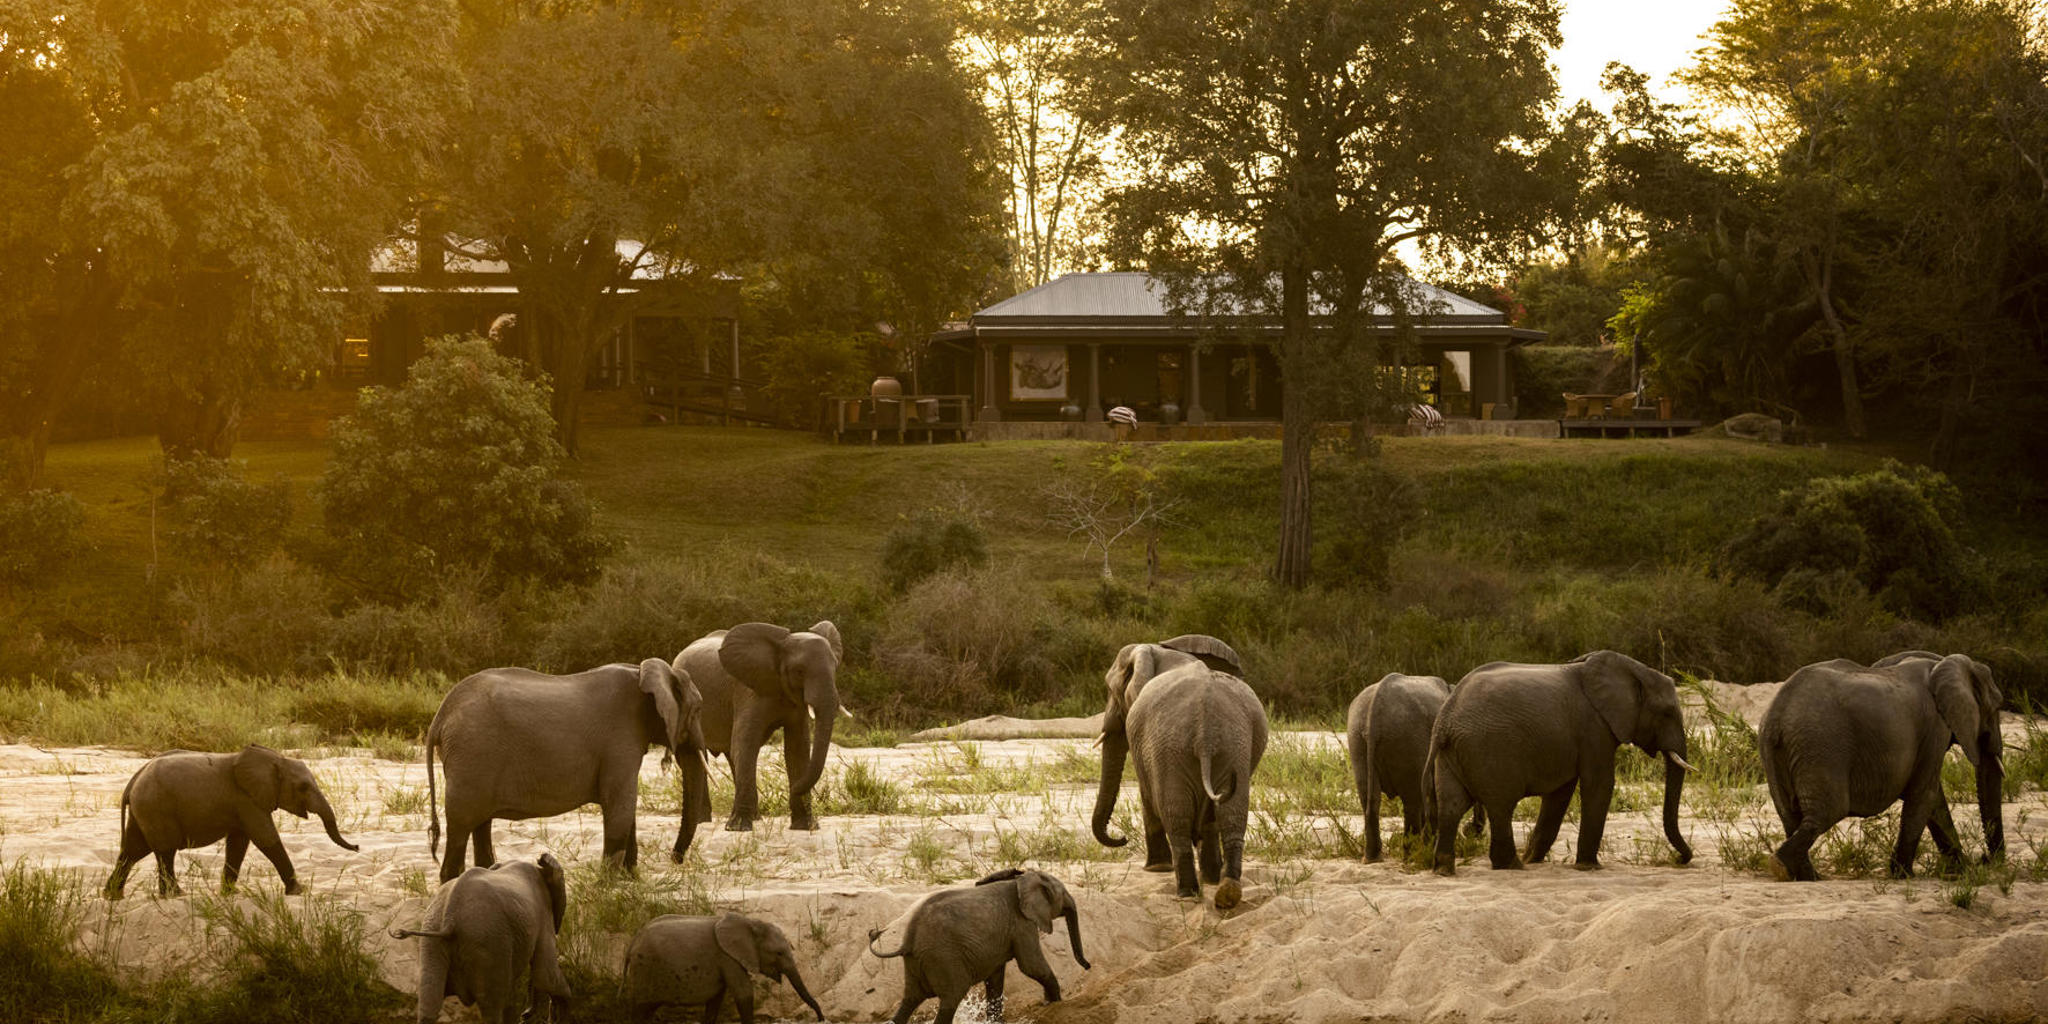 elephants, rattrays on mala mala, sabi sands, south africa